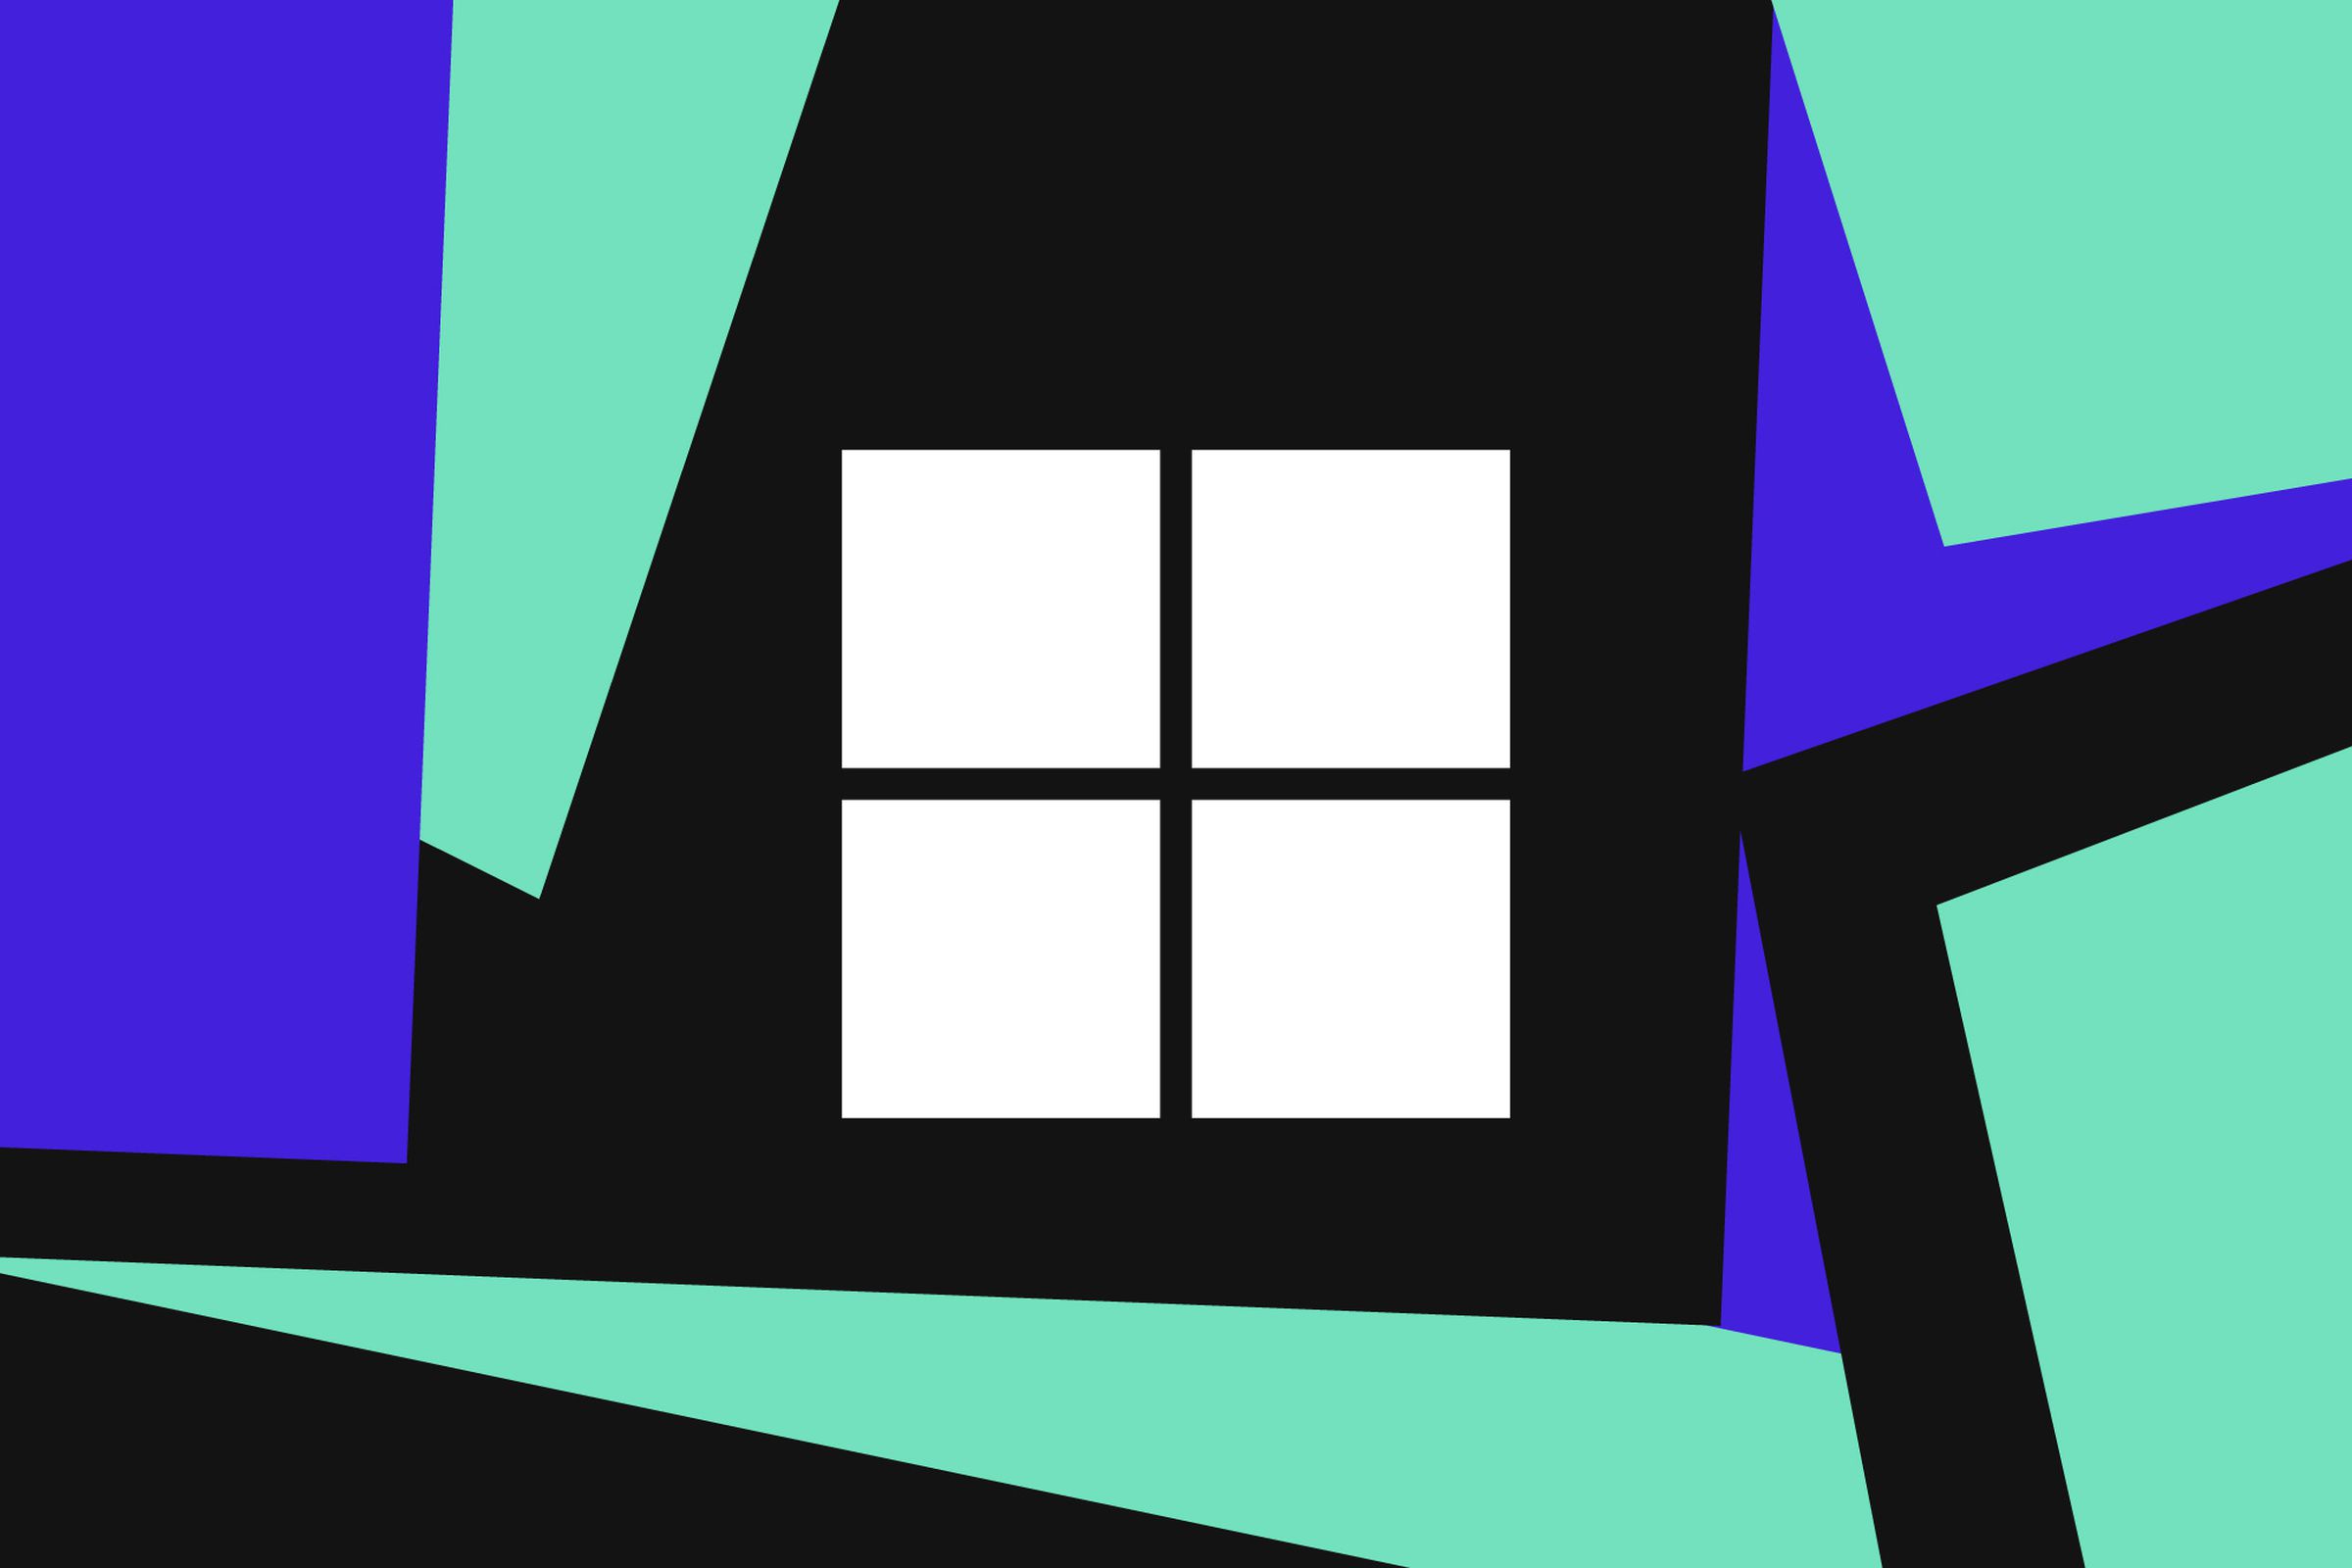 Hình minh họa logo Windows của Microsoft